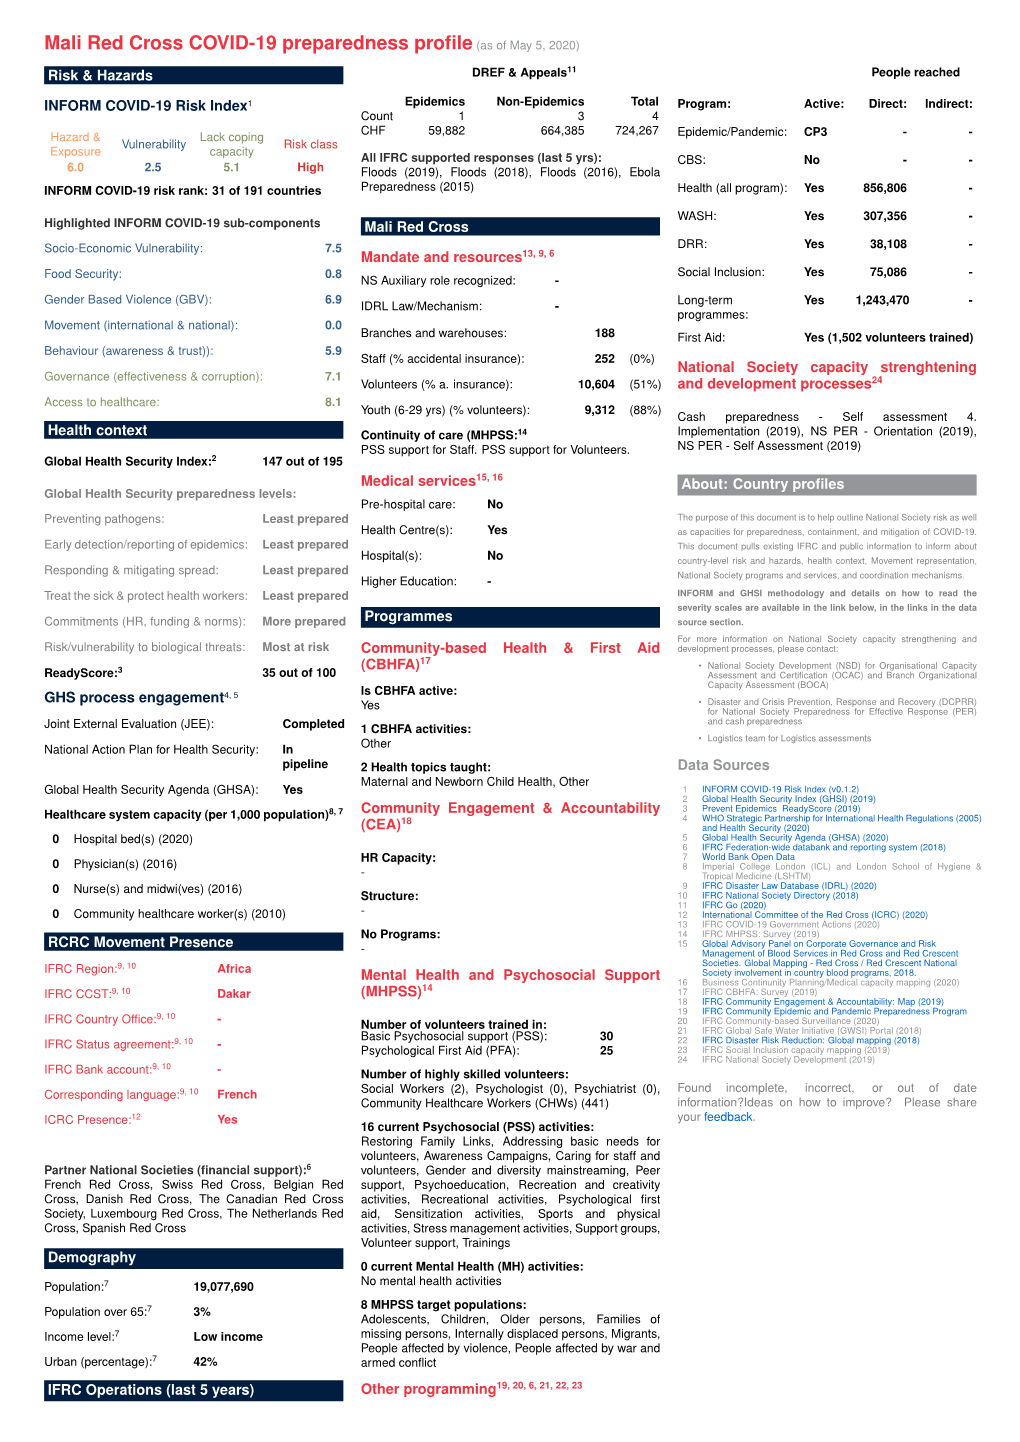 Mali Red Cross COVID-19 Preparedness Profile(As of May 5